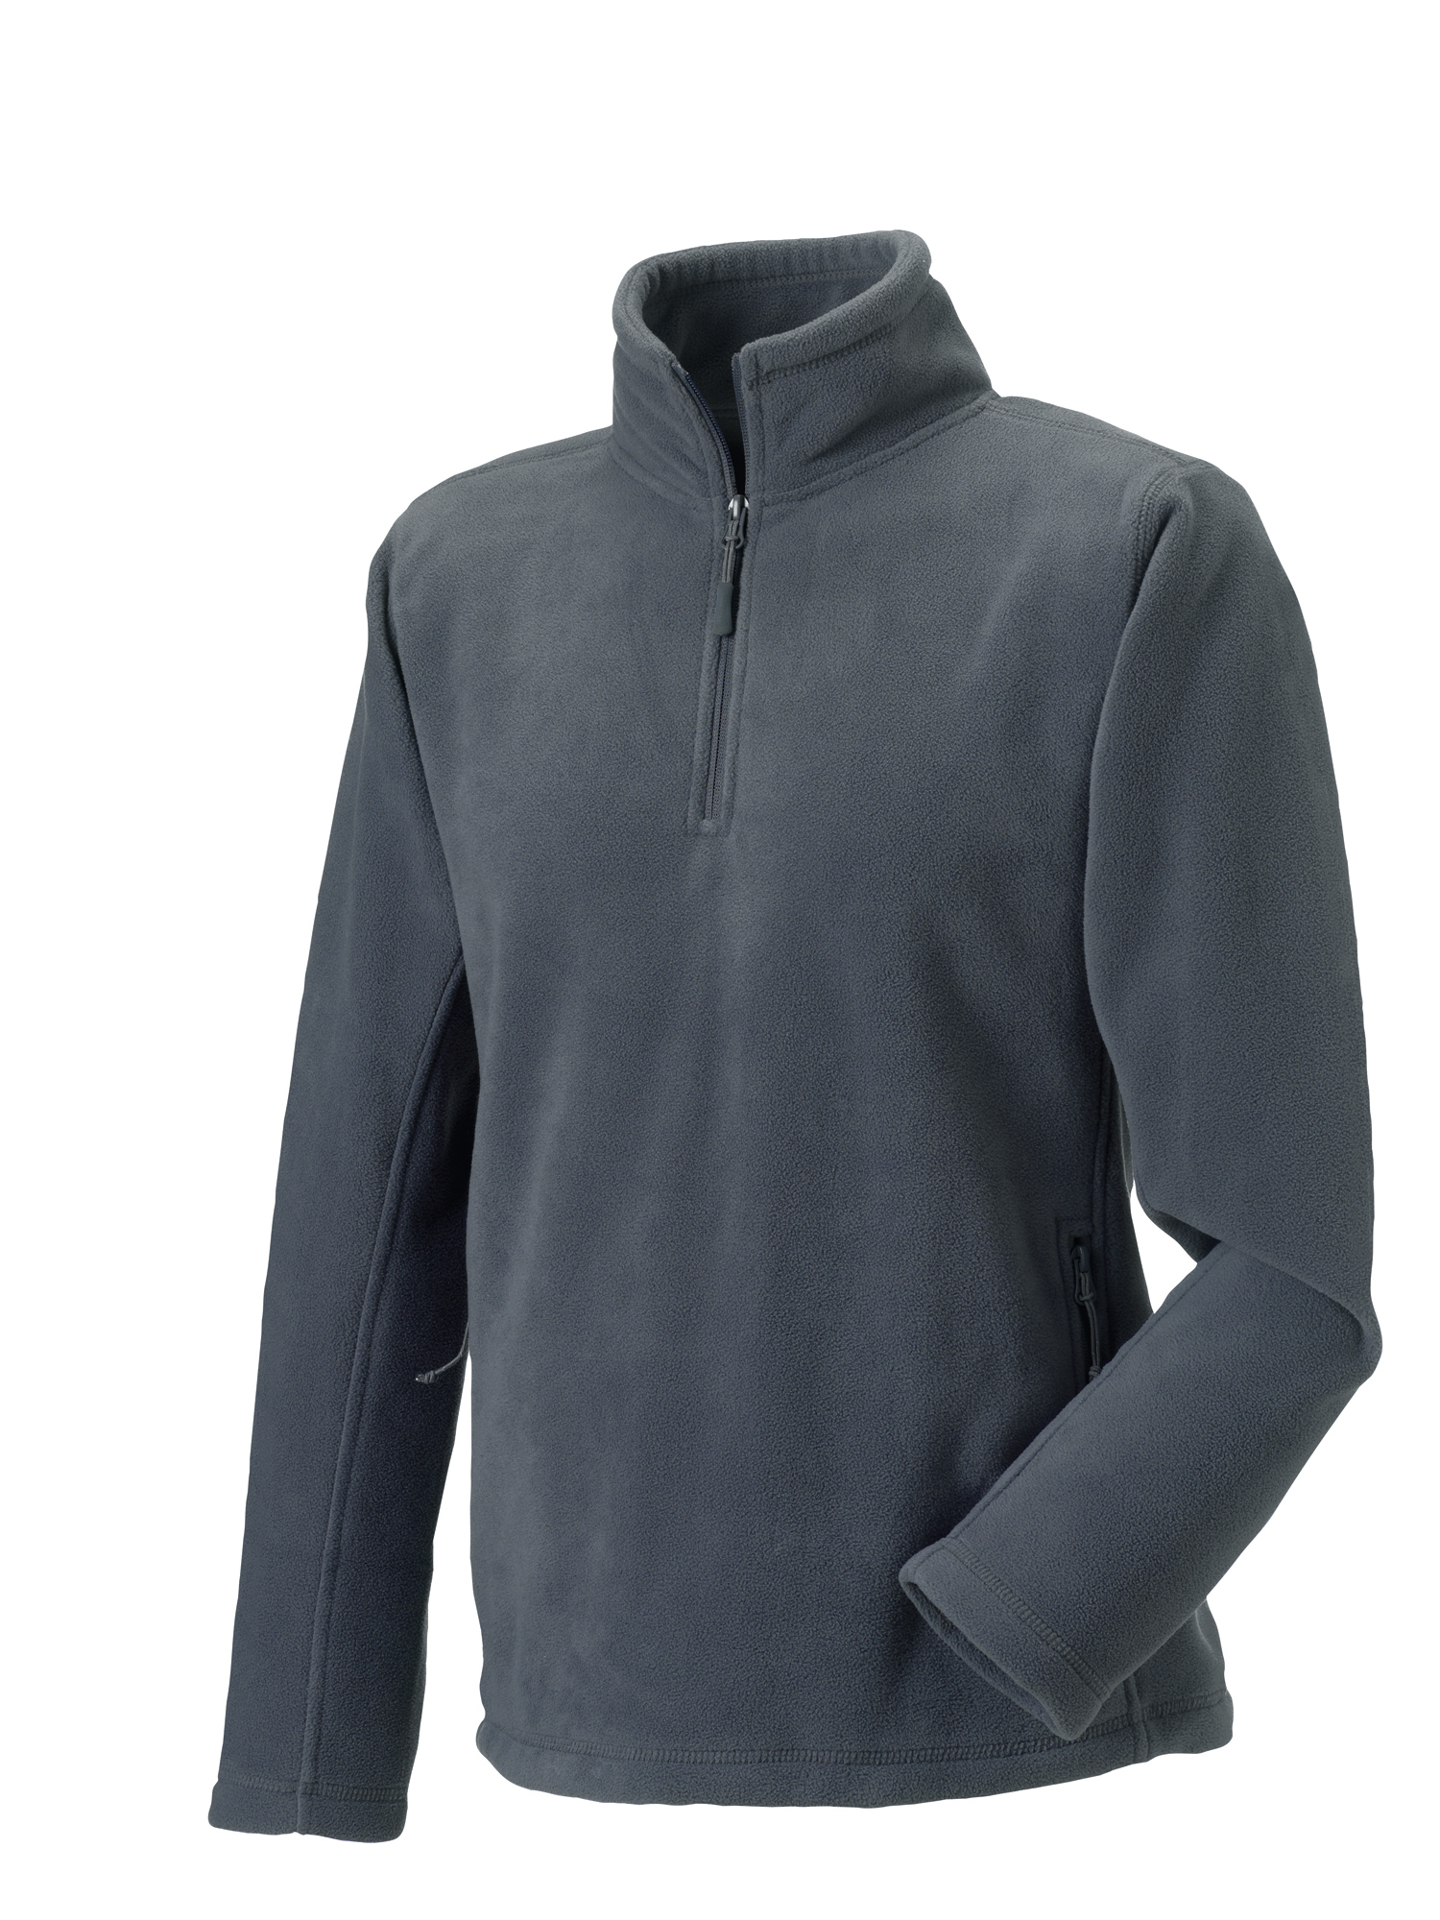 1/4 zip outdoor fleece in grey with cadet collar and pockets